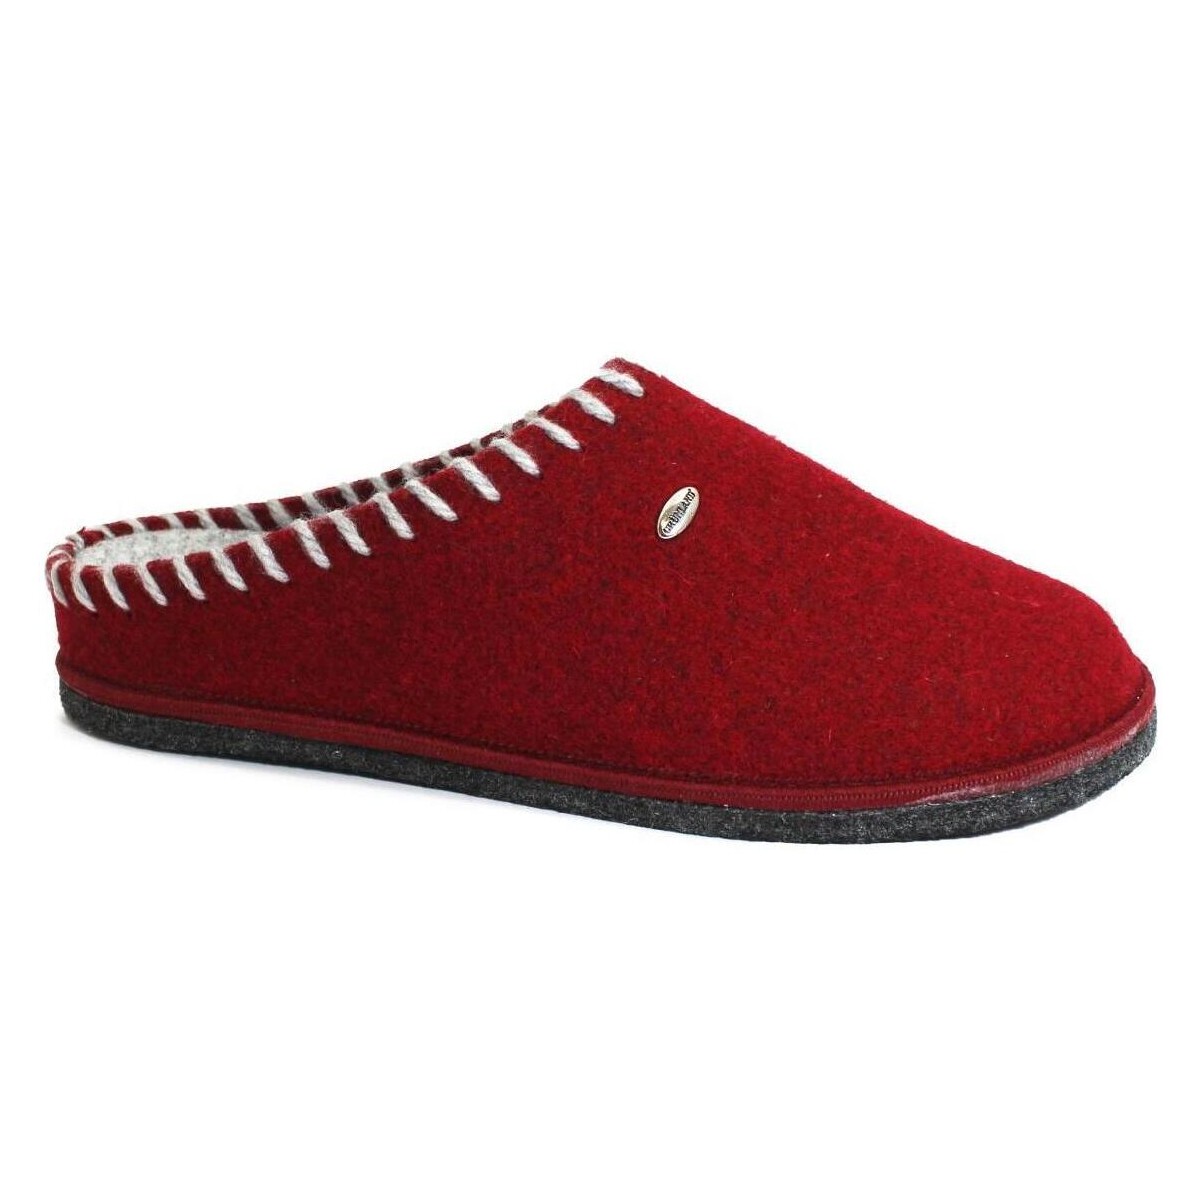 Zapatos Mujer Pantuflas Grunland GRU-RRR-CI2937-LG Rojo